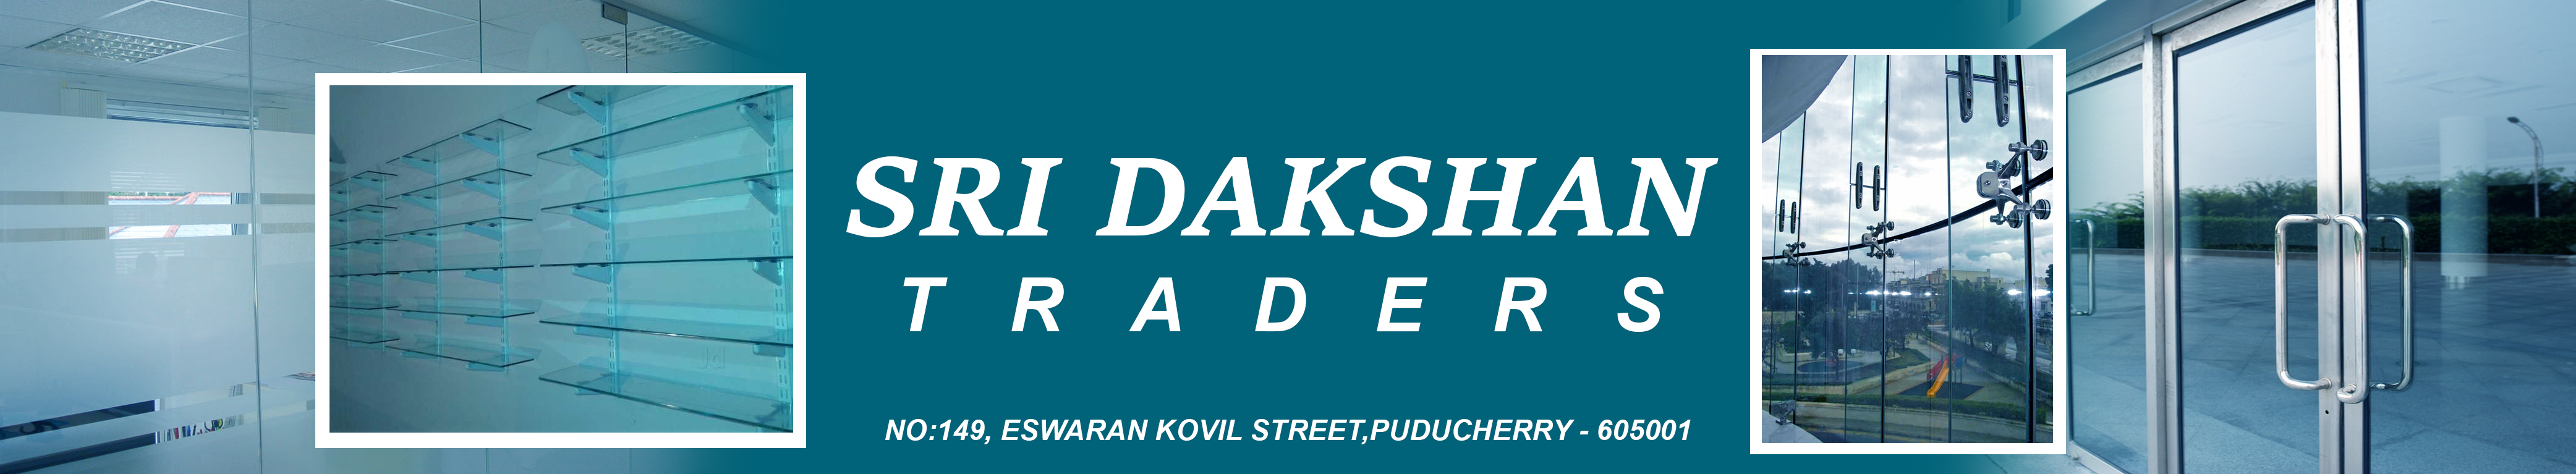 Sri Dakshan Traders Banner Image